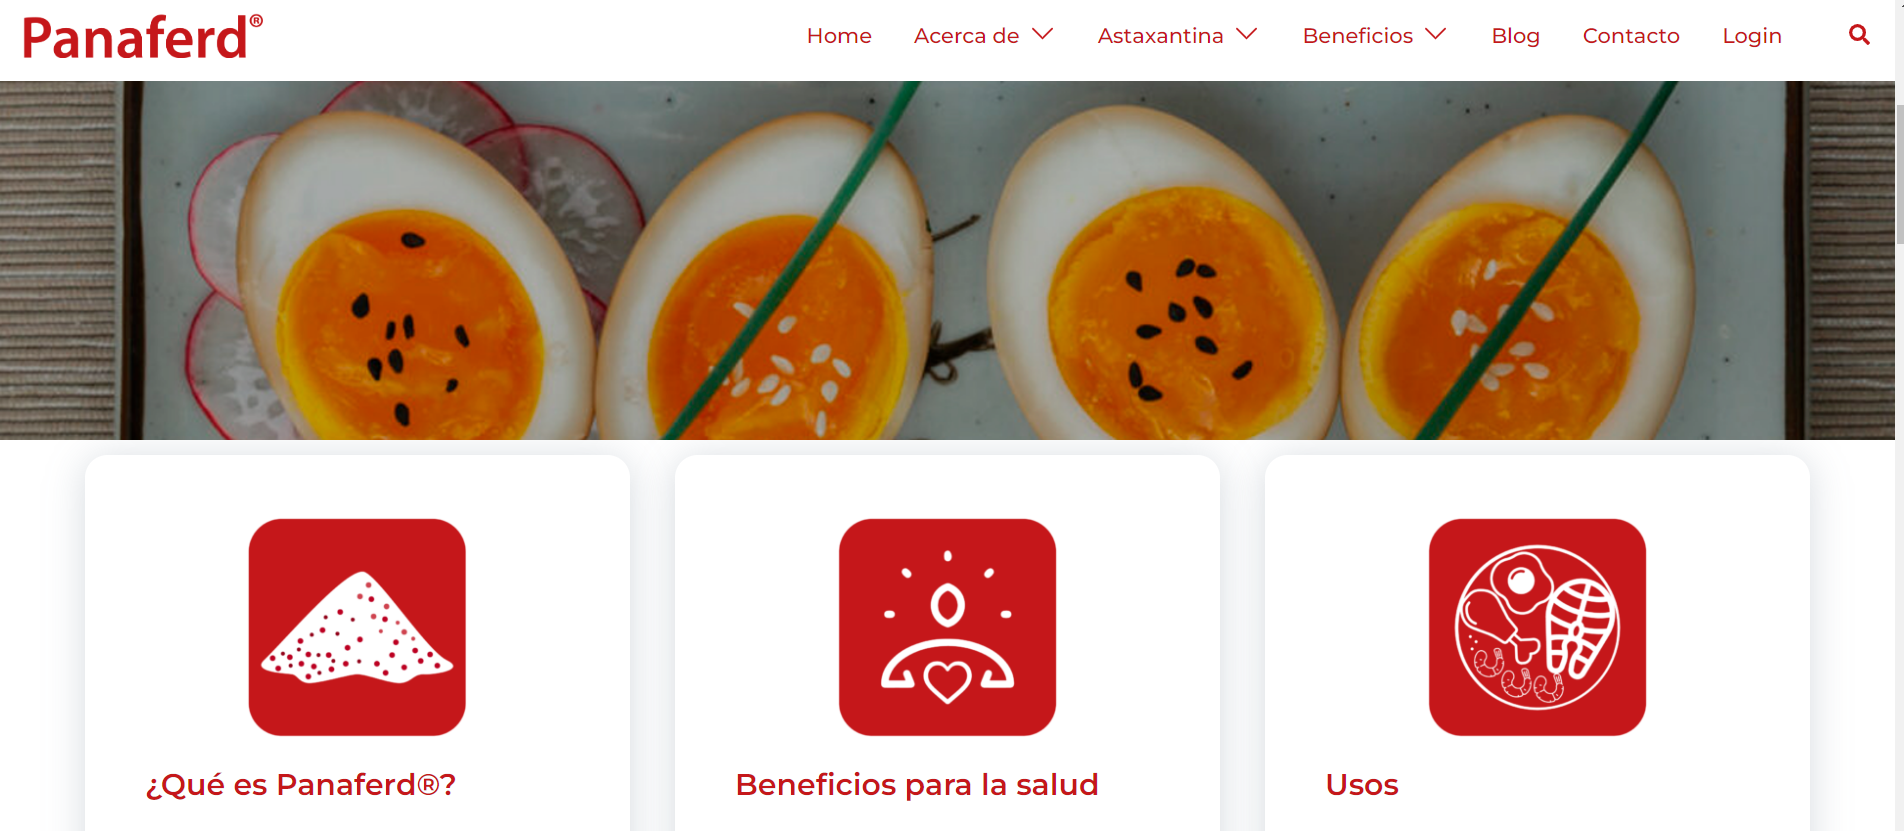 Panaferd Chile website